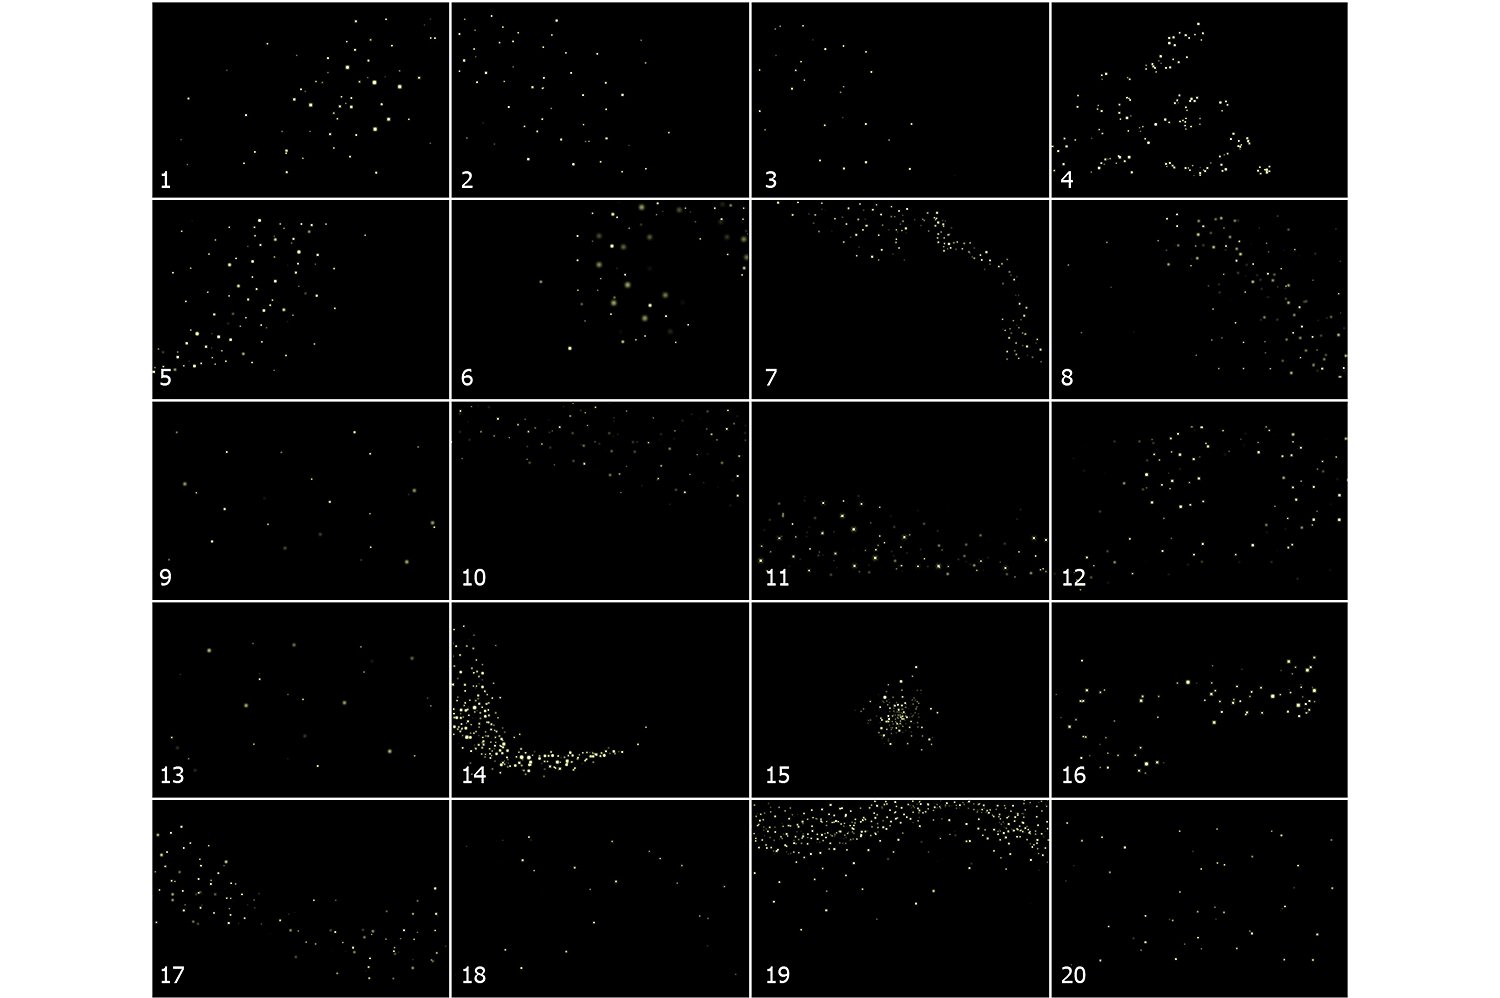 超高像素火花特效叠层背景 5K Fireflies Vol. 1插图(3)